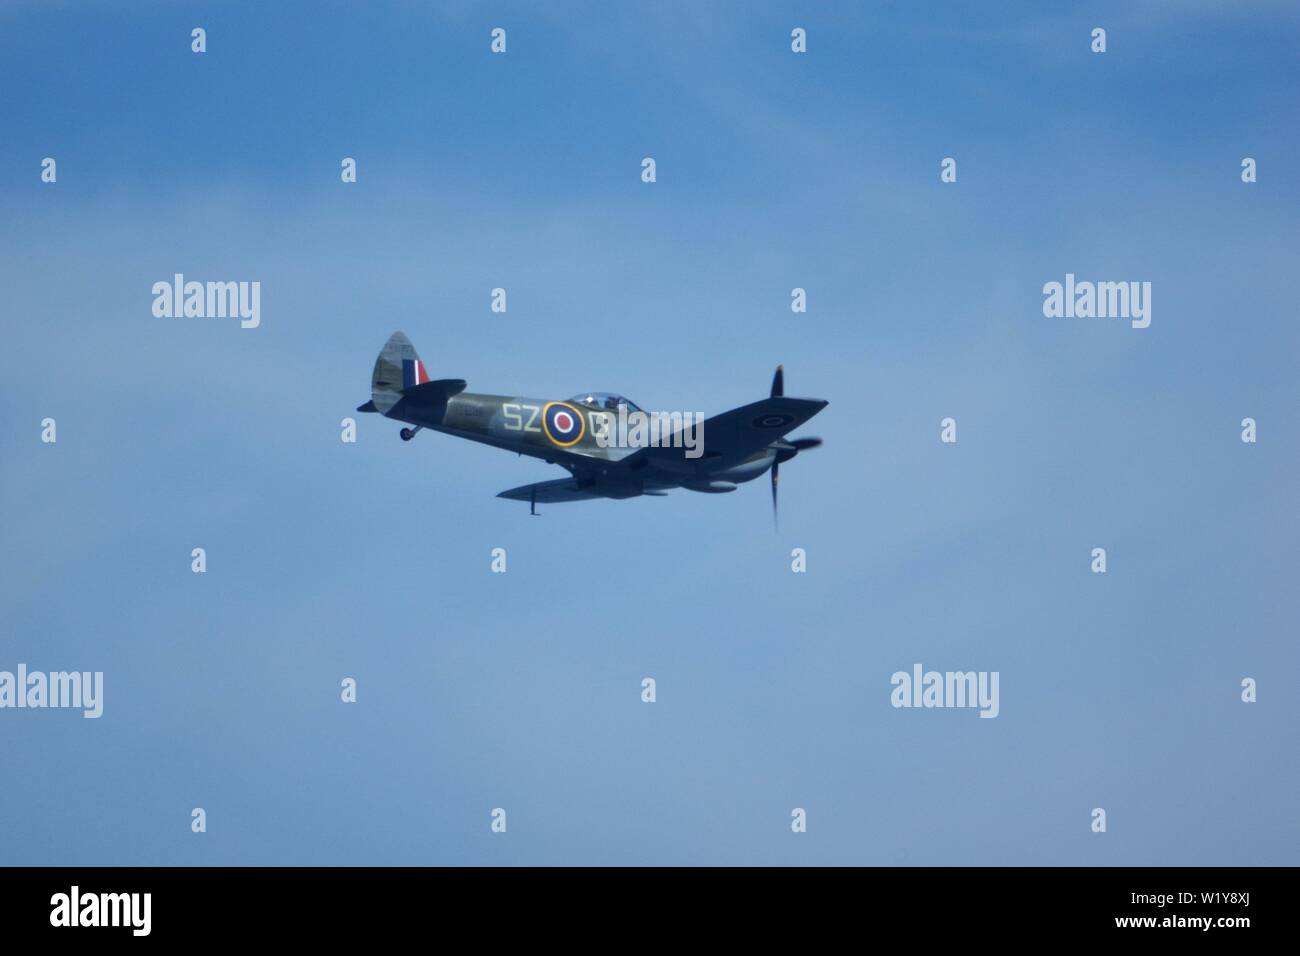 Aile clippée (Spitfire Mark MkXVIe TE311) Affichage à Torbay meeting aérien. Paignton, Devon, UK. Juin, 2019. Banque D'Images